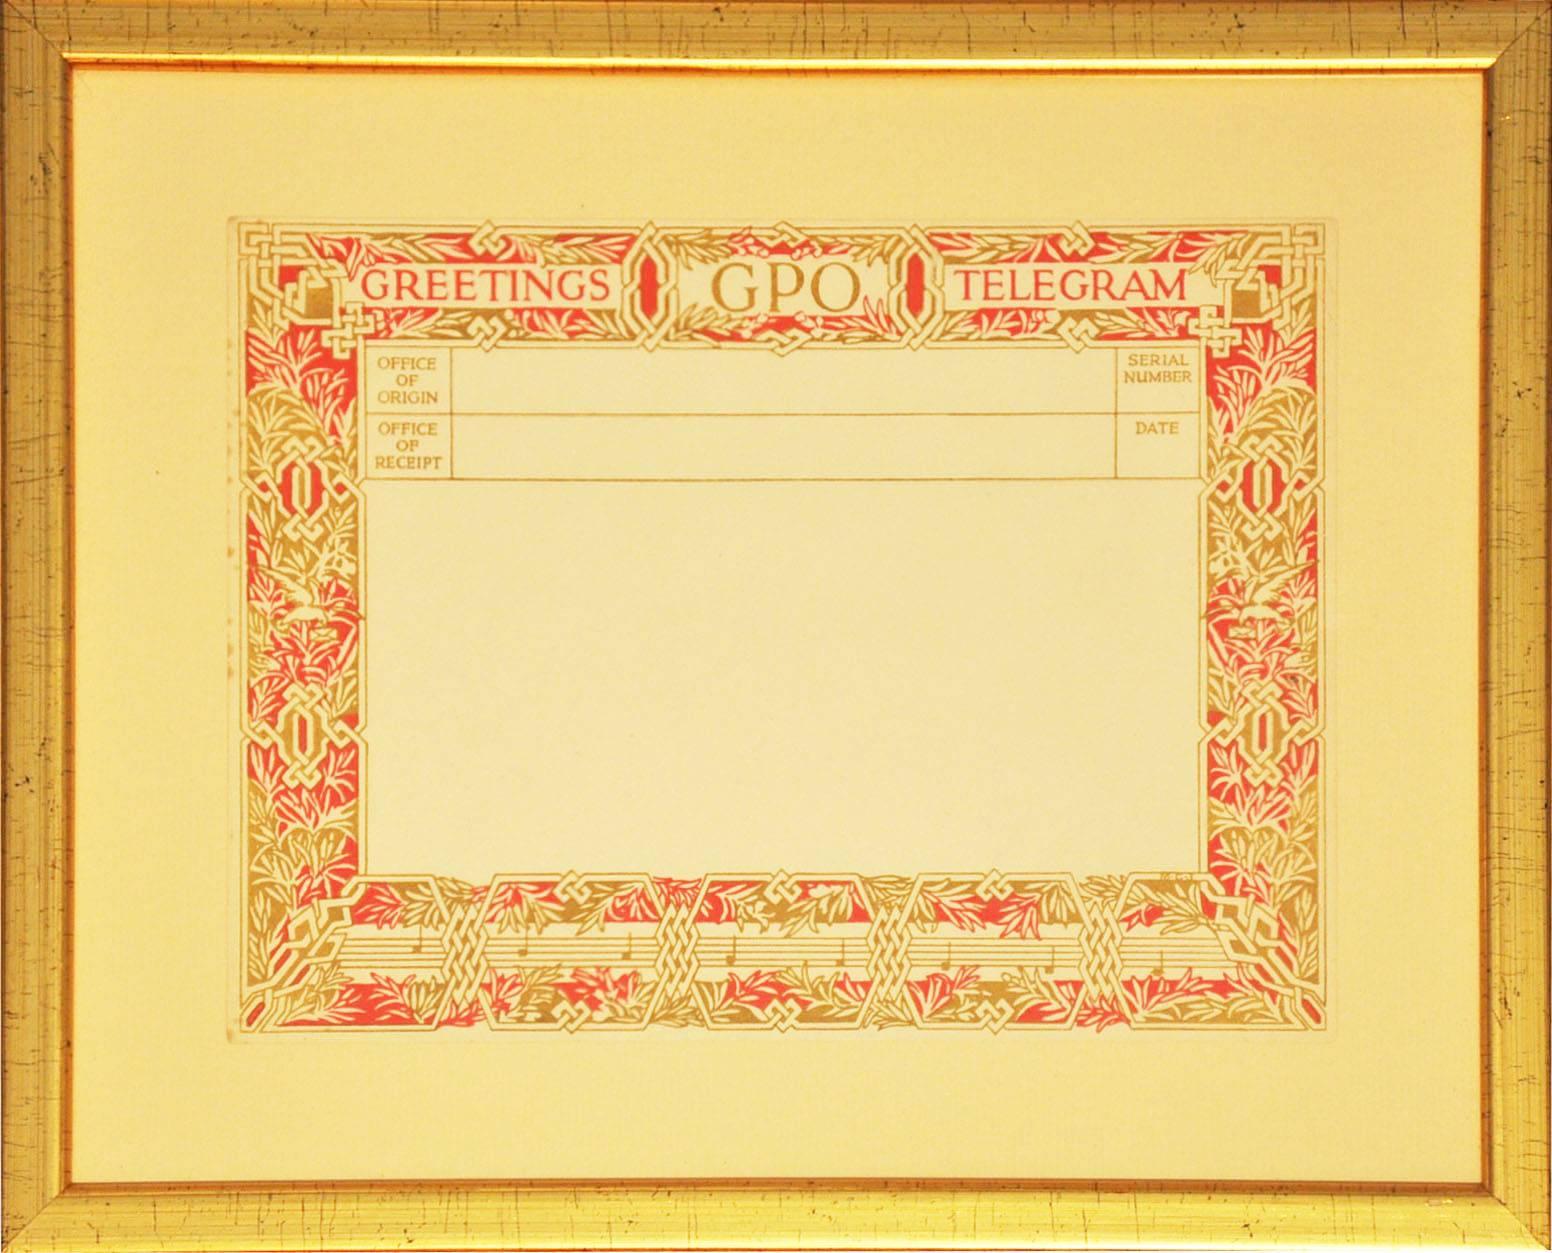 British Post Office Greetings Telegrams (1935-1978), nach diversen Künstlern